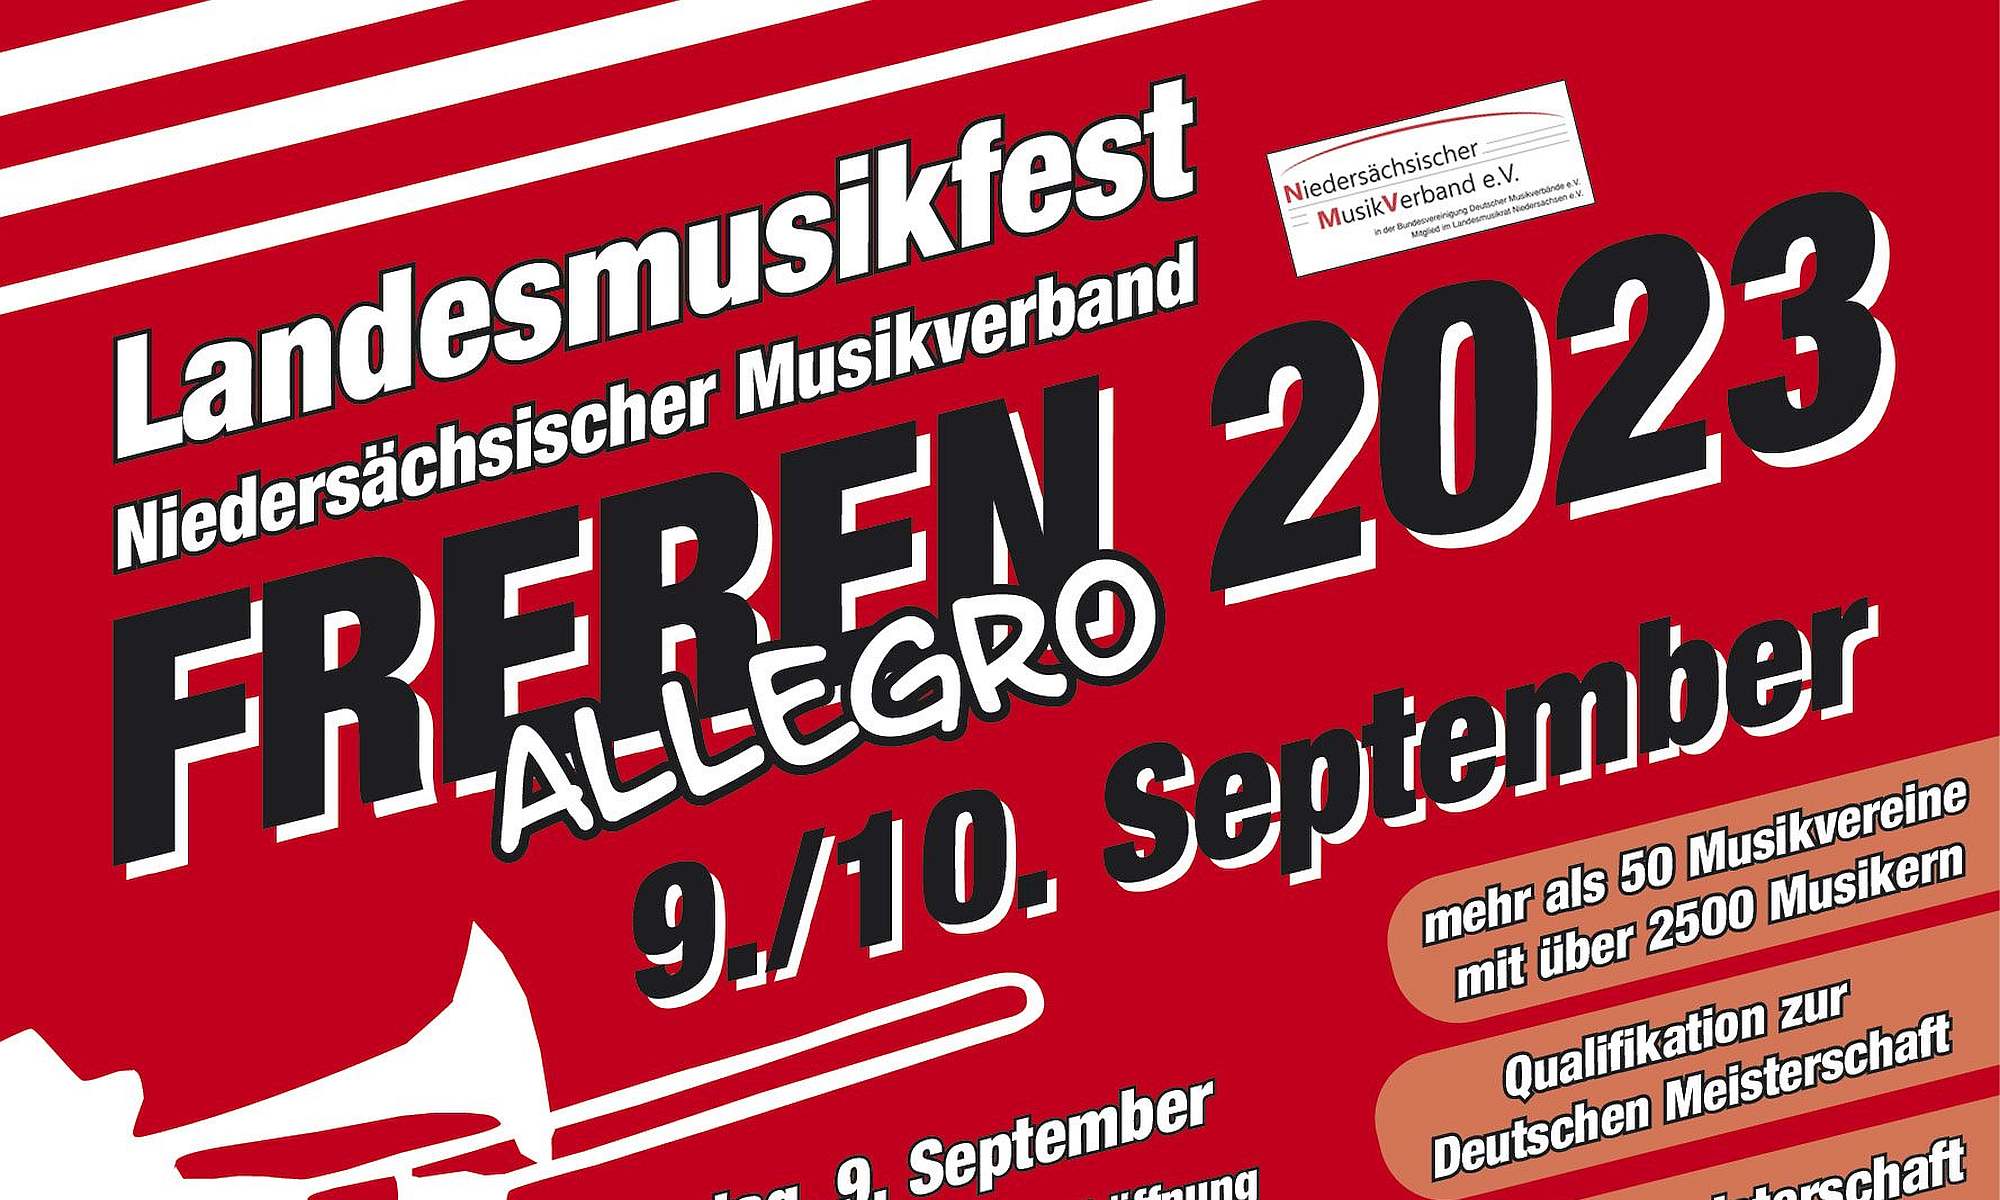 Landesmusikfest des Niedersächsischen Musikverbandes